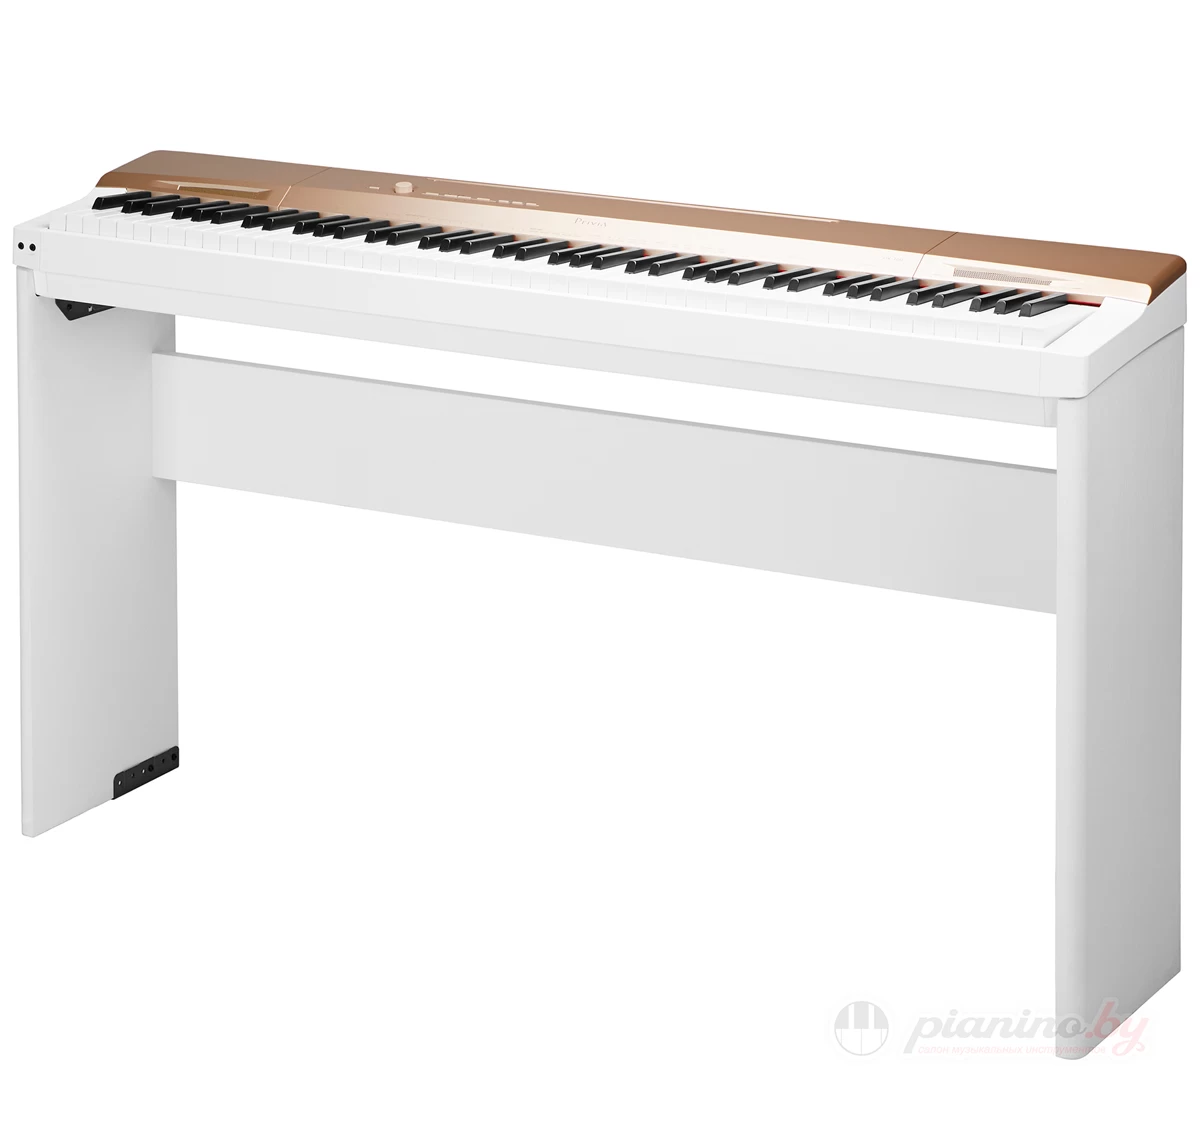 Цифровое пианино Casio Privia PX-160 GD купить в Минске, цена, отзывы